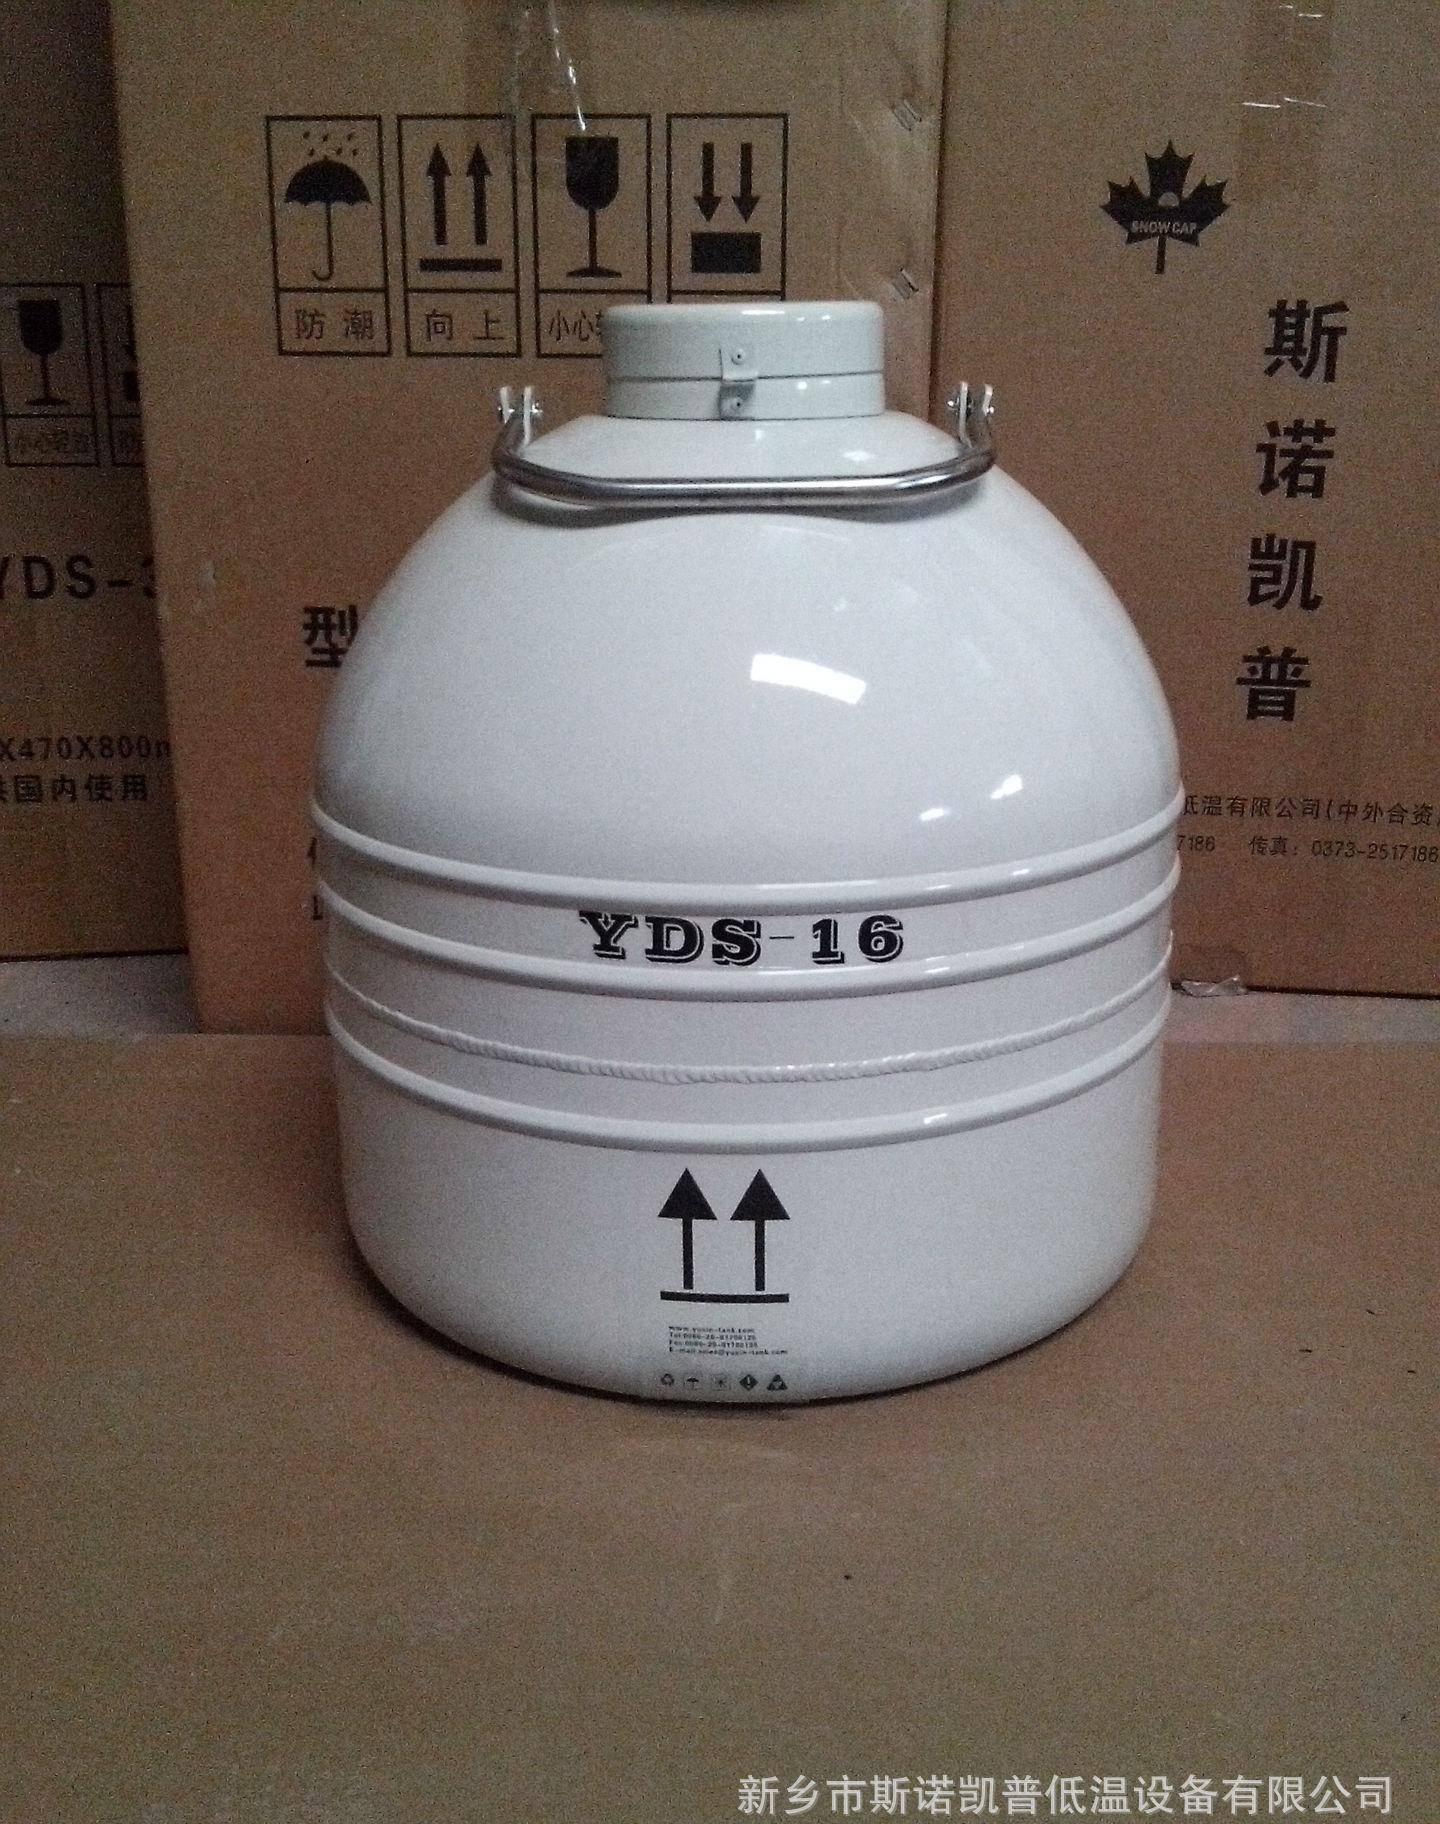 液氮罐 储运容器 16 液氮生物容器1